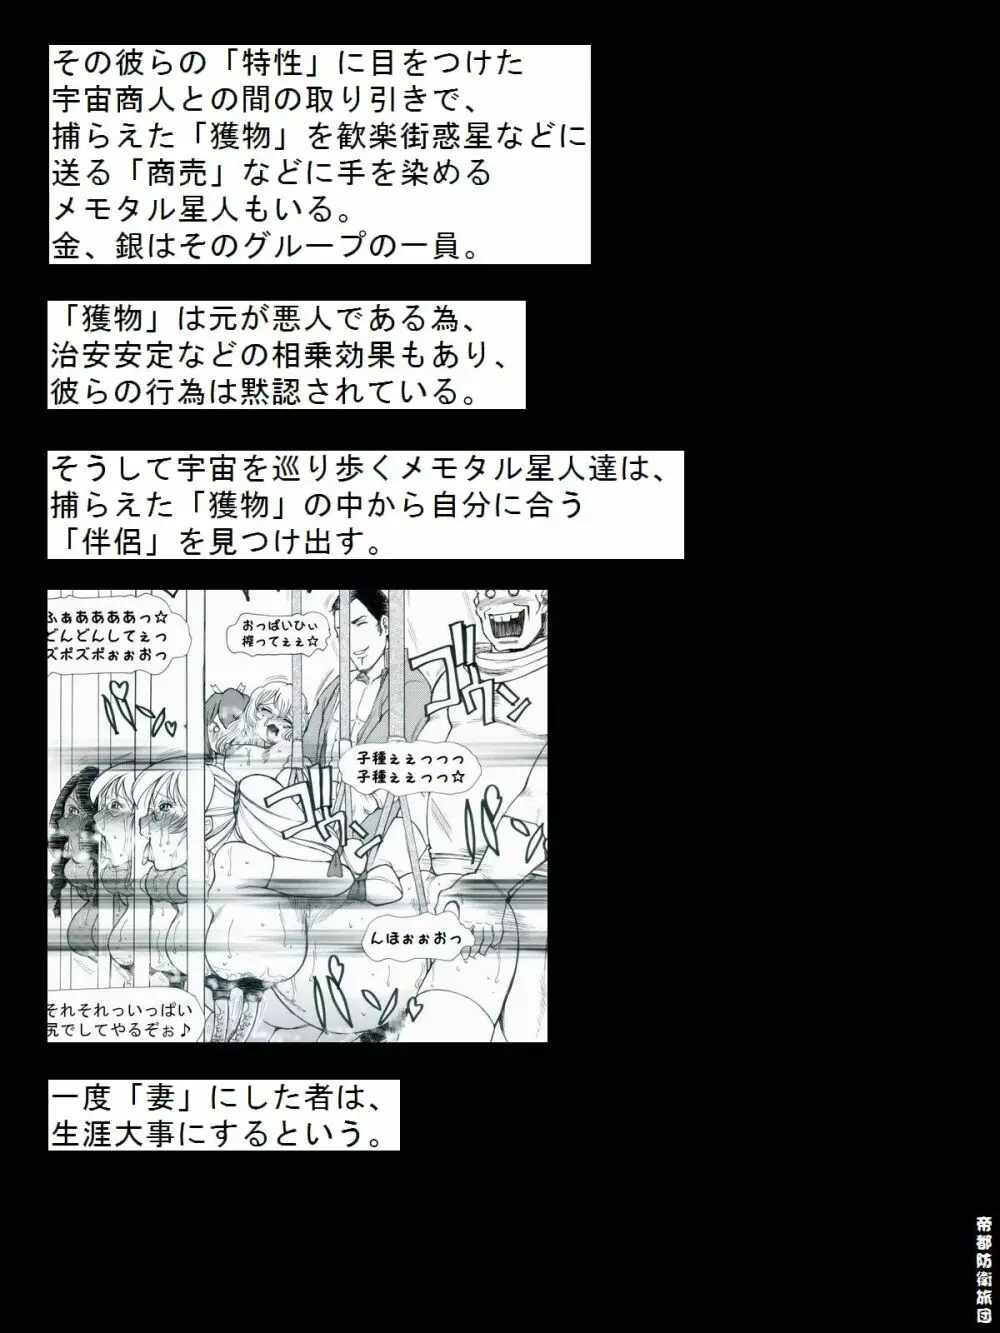 [帝都防衛旅団] RTKBOOK 9-3 「M○Xいぢり(3) 『PANPAN-MAN』」 - page29